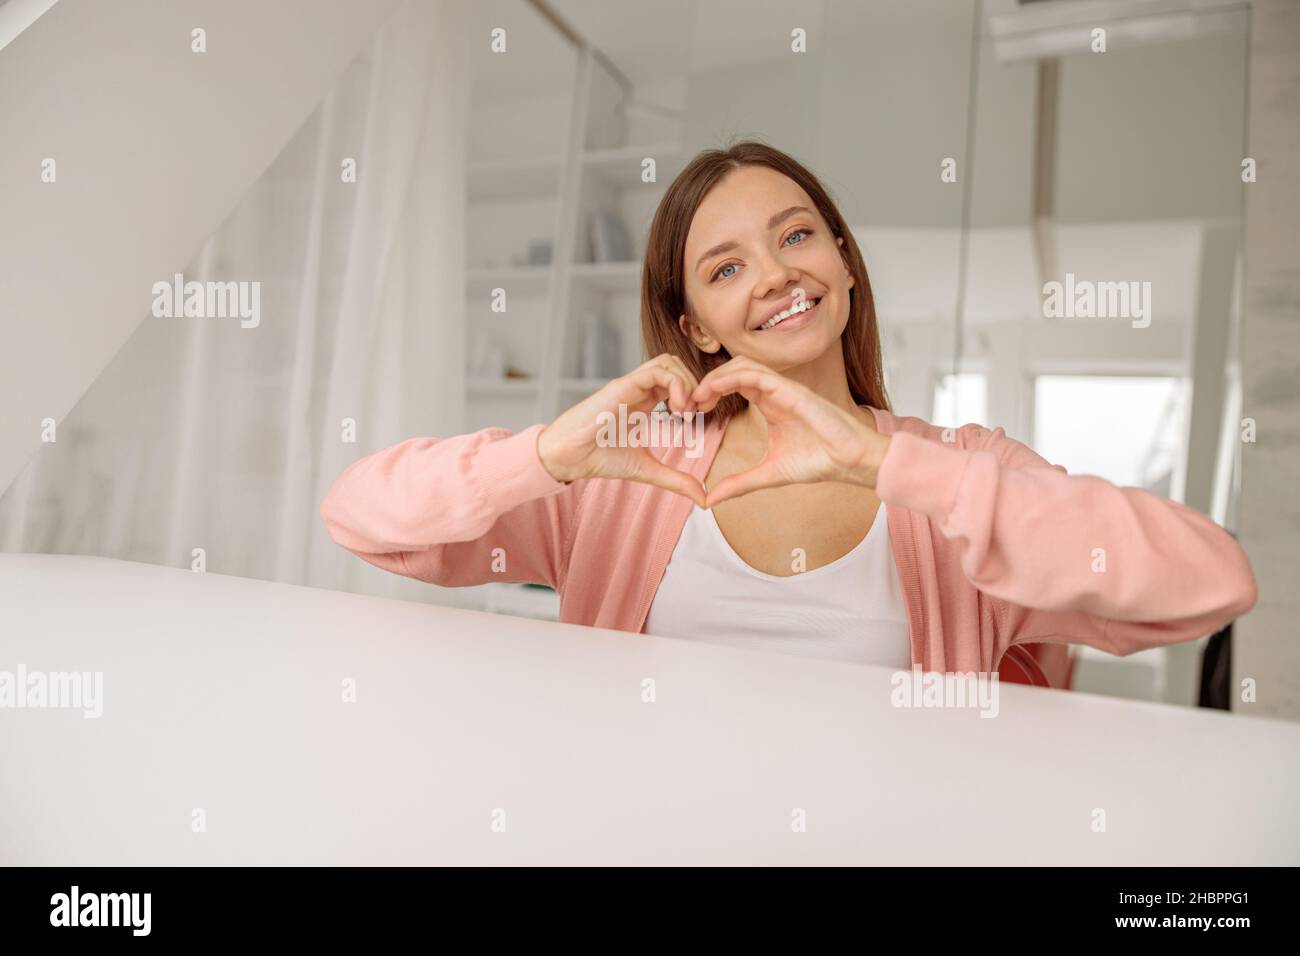 Lächelnde, schöne Dame, die mit ihren eigenen Händen eine Herzform zeigt Stockfoto